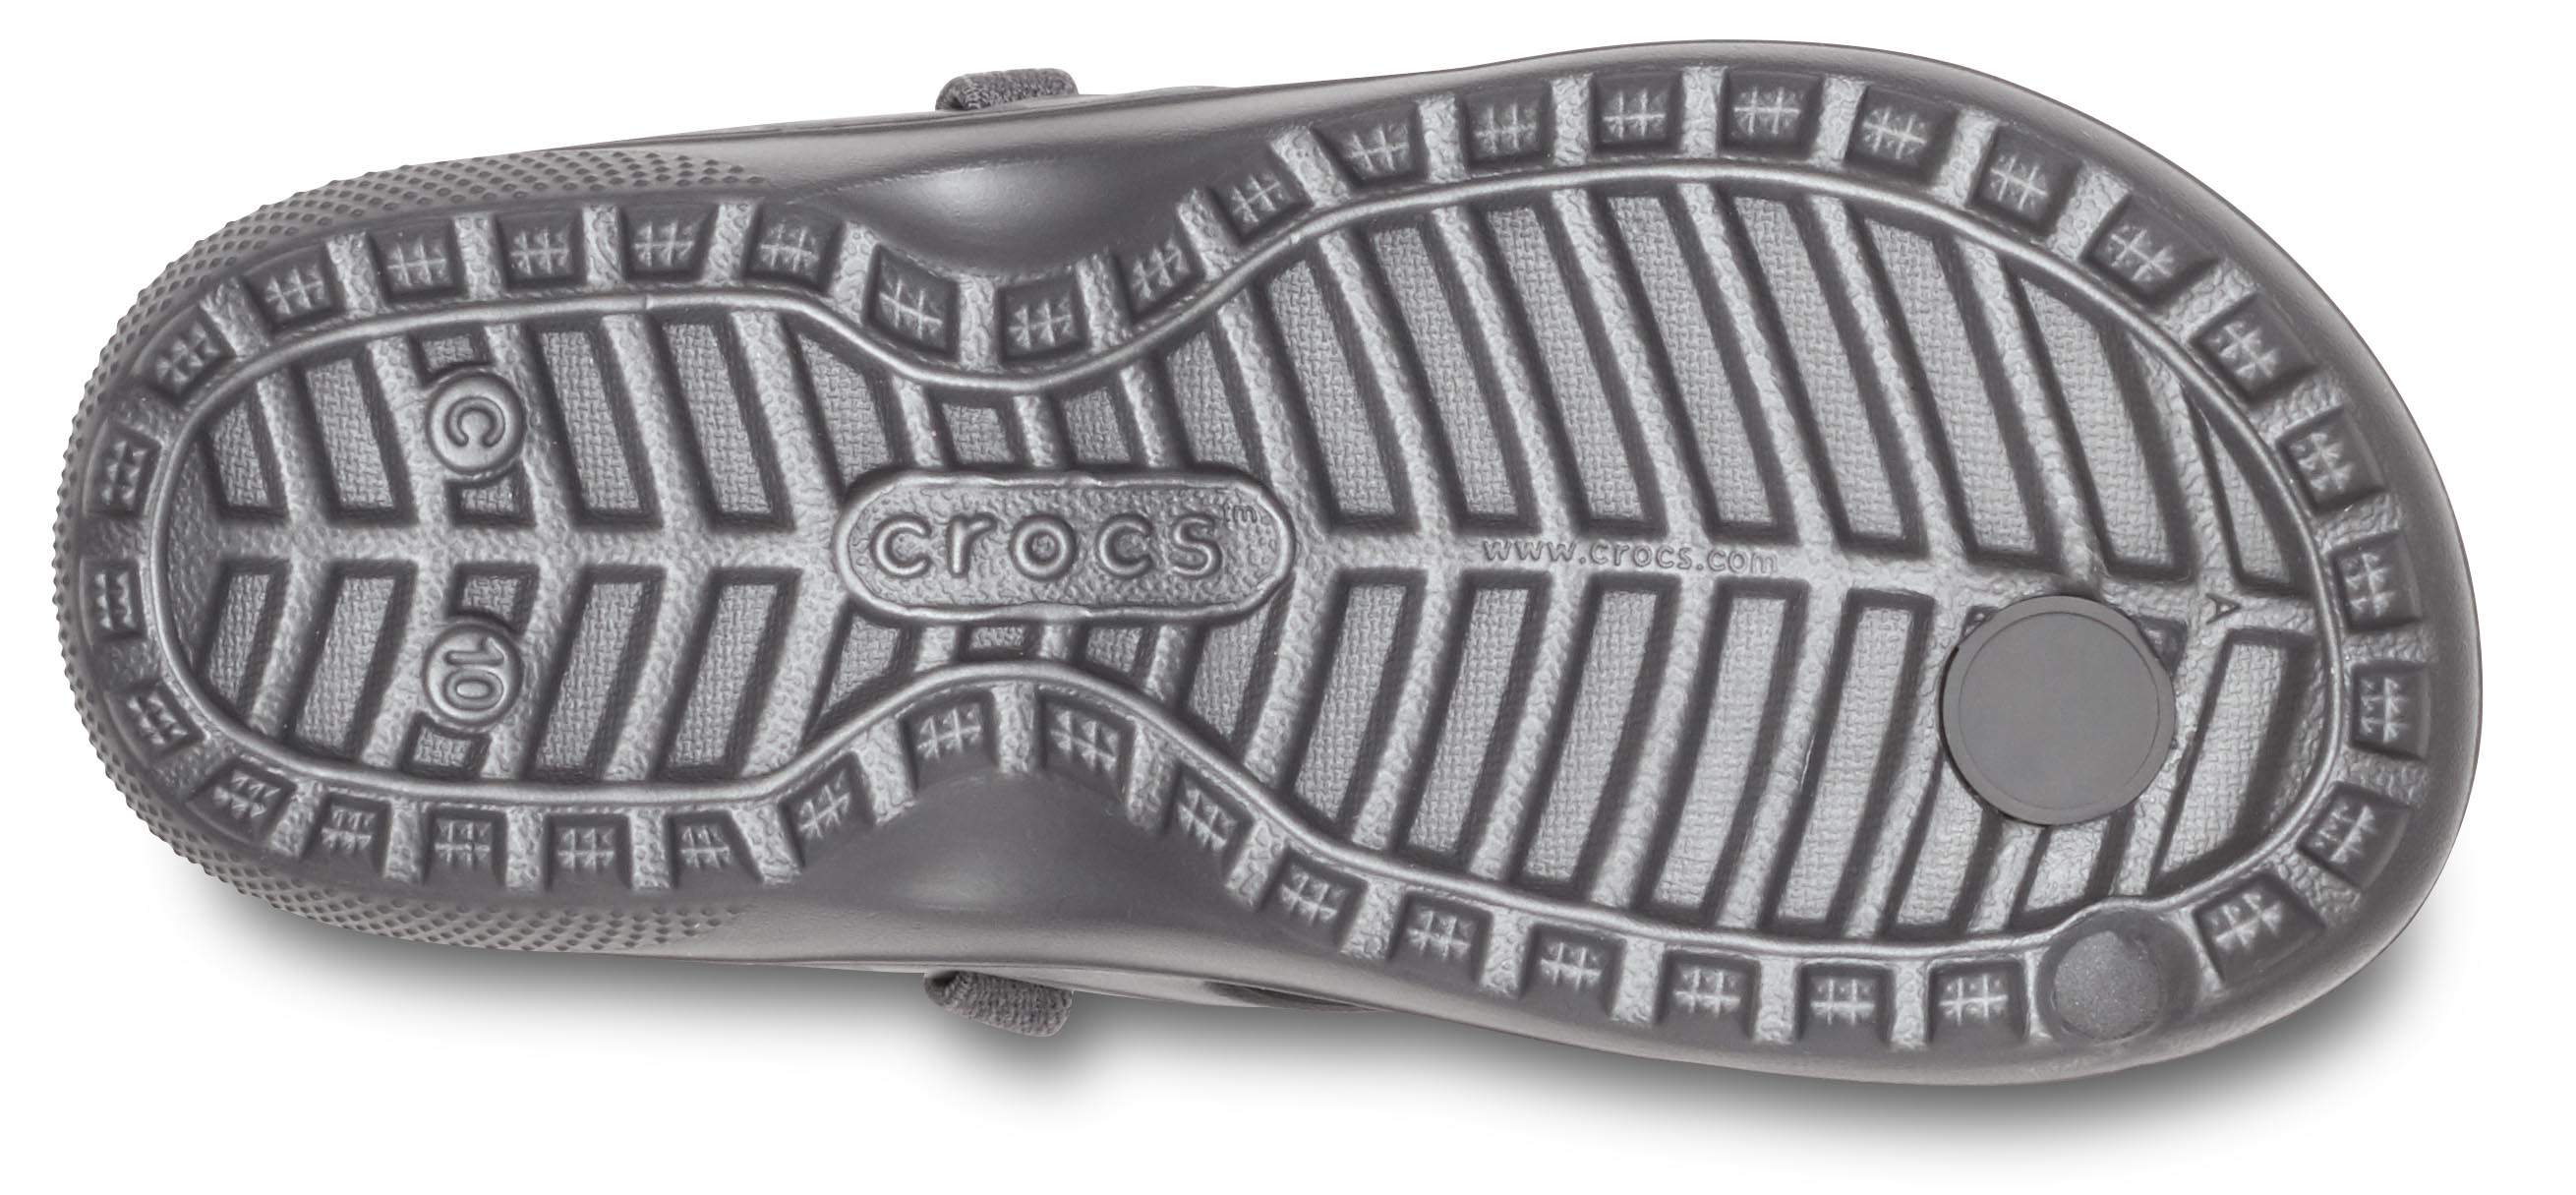 croc classic flip